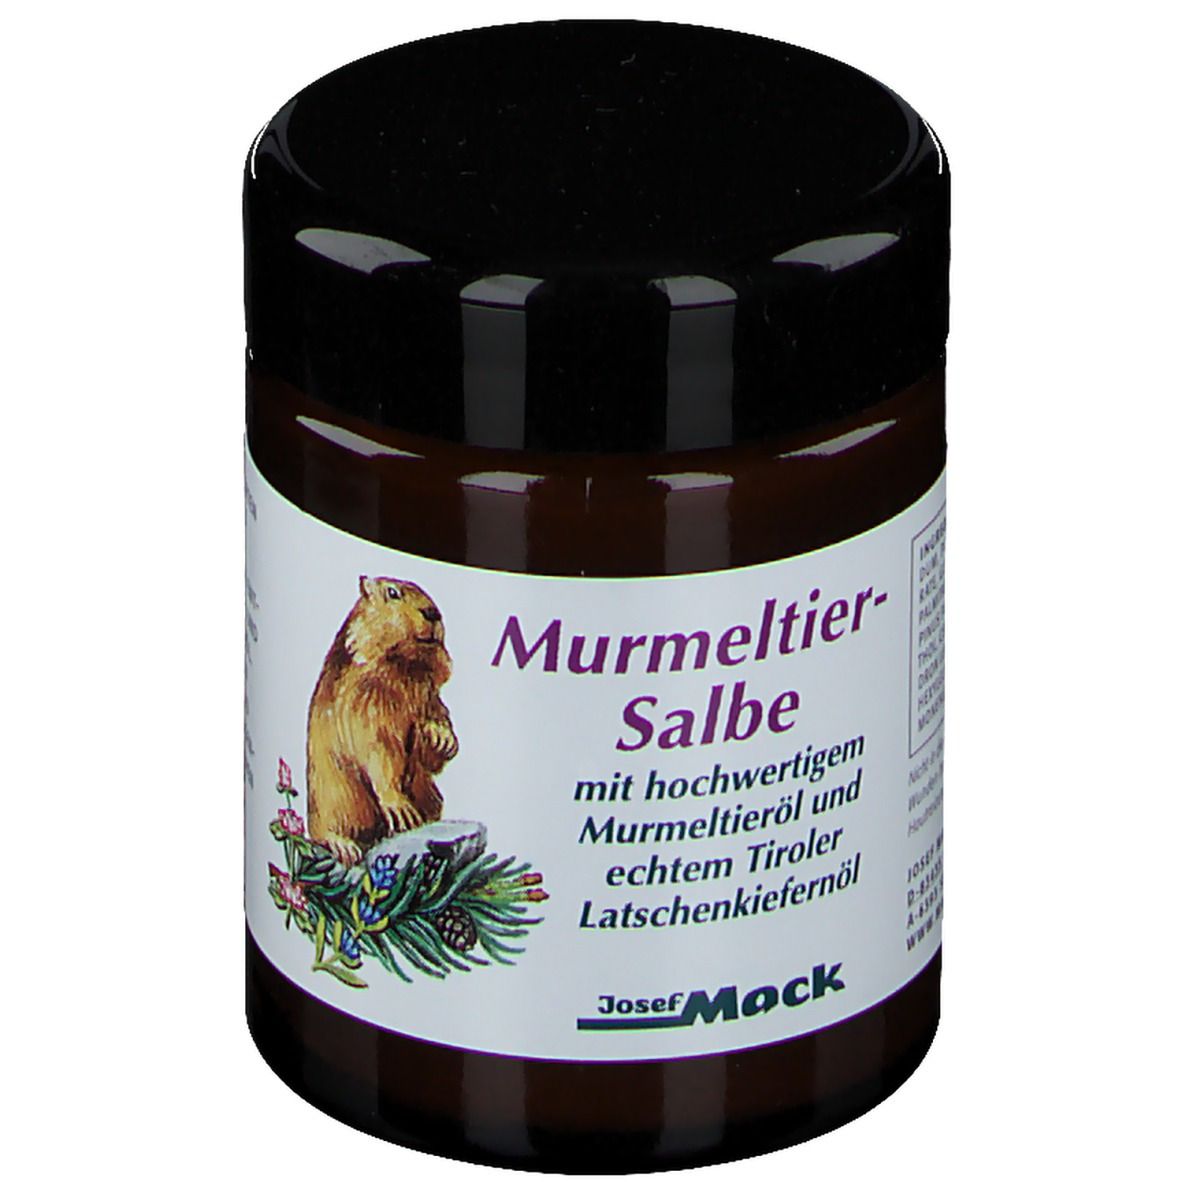 Murmeltier Salbe